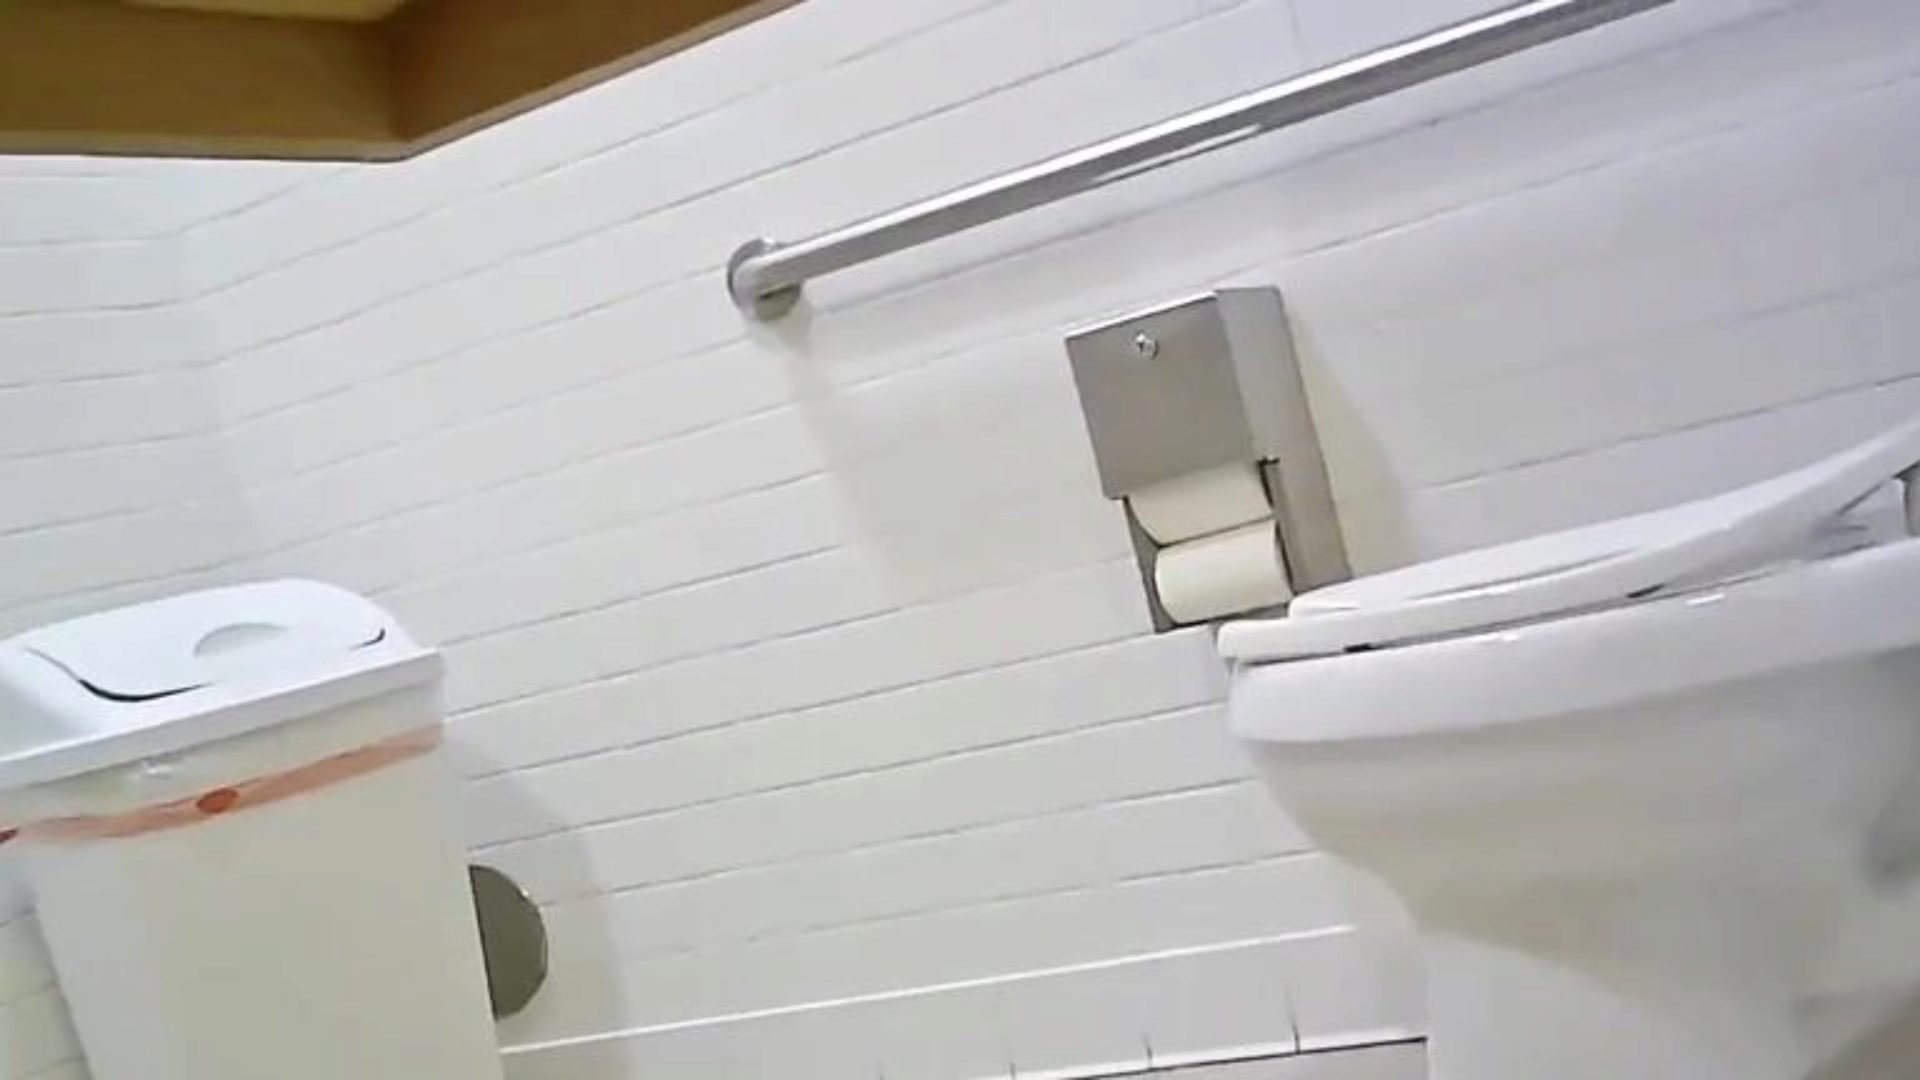 telecamera nascosta in bagno - ragazza in forma, culo consumato, guarda questo, dimmi cosa ne pensi; p '